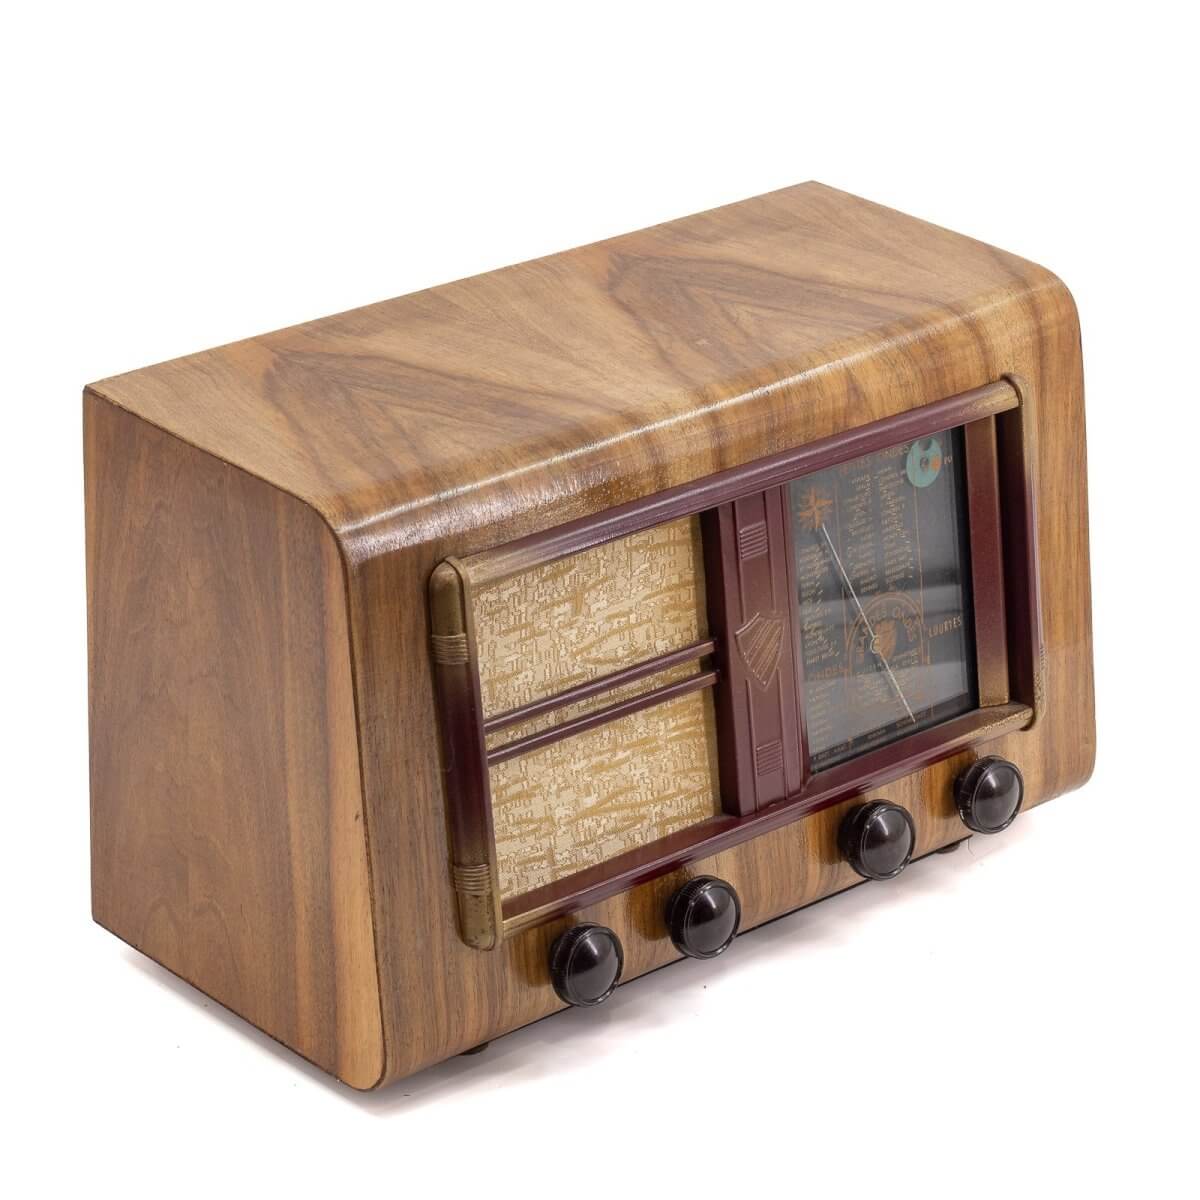 Radio Bluetooth Clarville Vintage 40’S enceinte connectée française haut de gamme prodige radio vintage